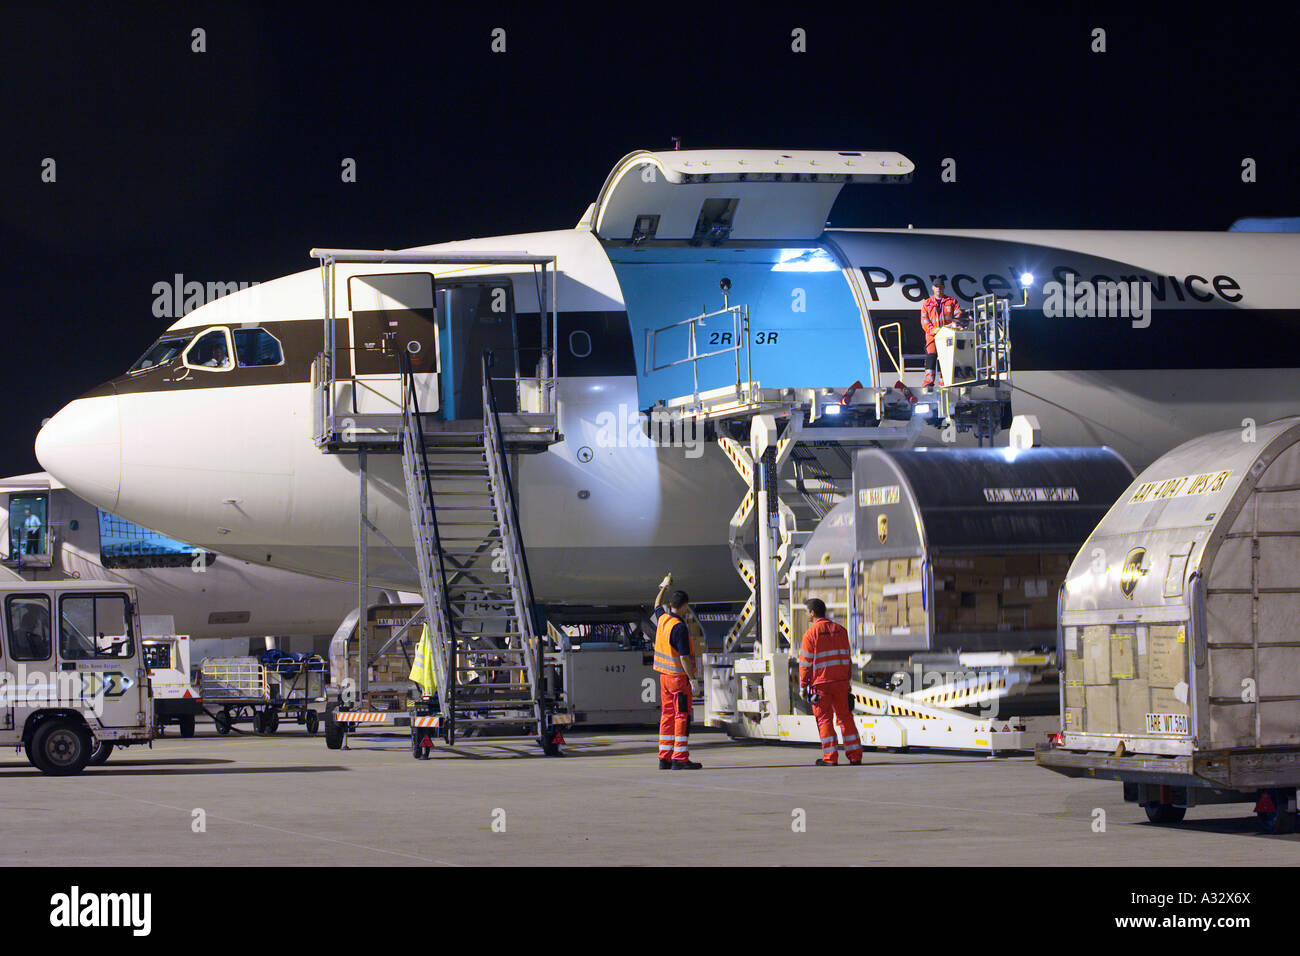 Un avion cargo UPS à l'aéroport de Cologne Bonn la nuit, Allemagne Banque D'Images